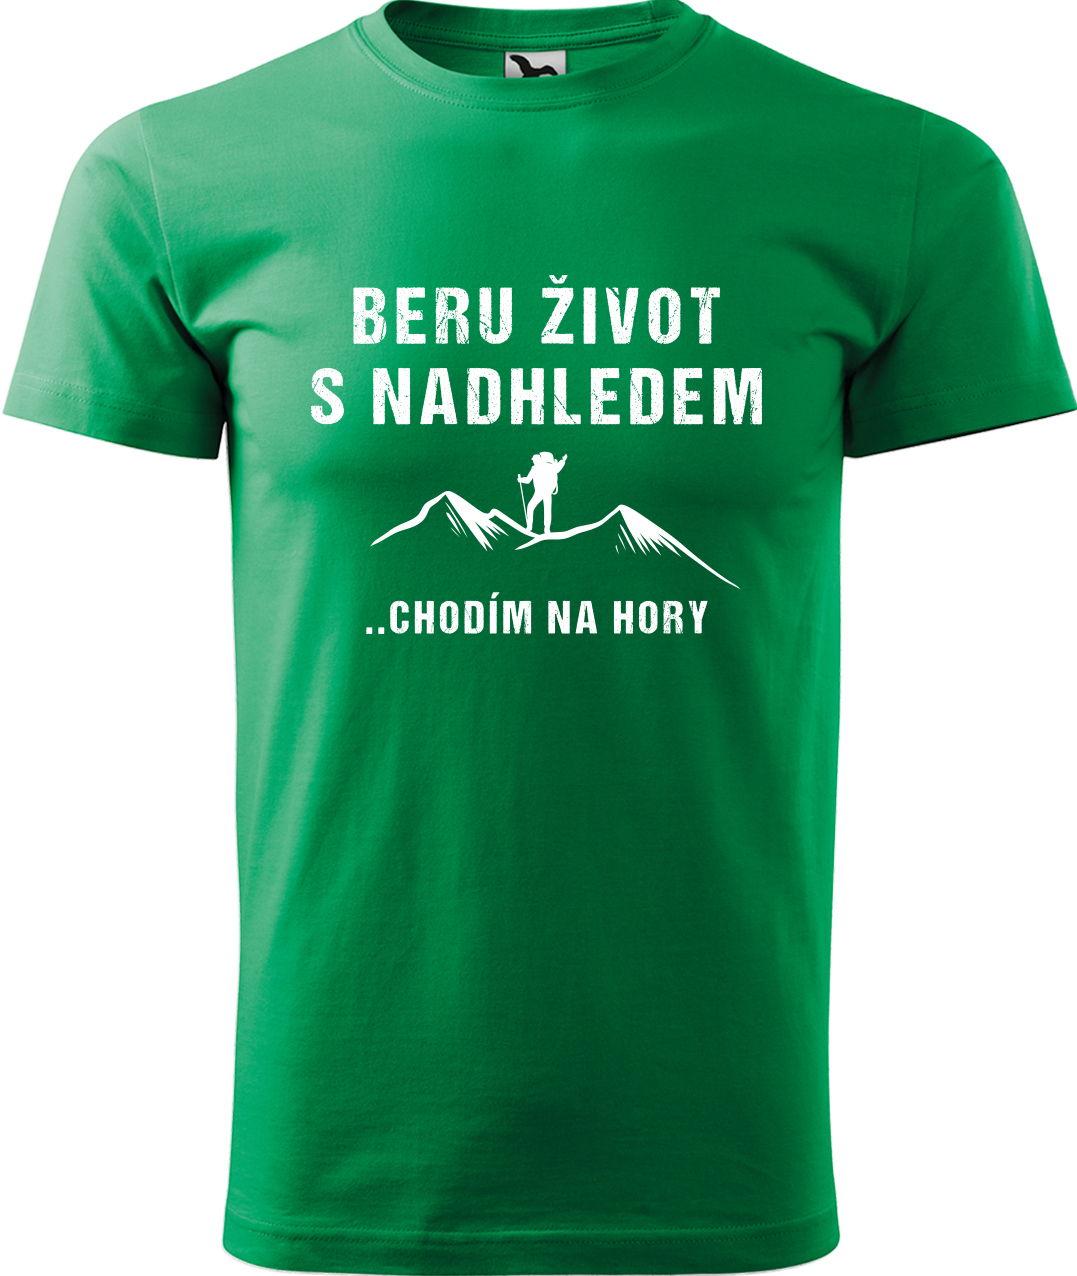 Pánské tričko na hory - Beru život s nadhledem, chodím na hory Velikost: S, Barva: Středně zelená (16), Střih: pánský